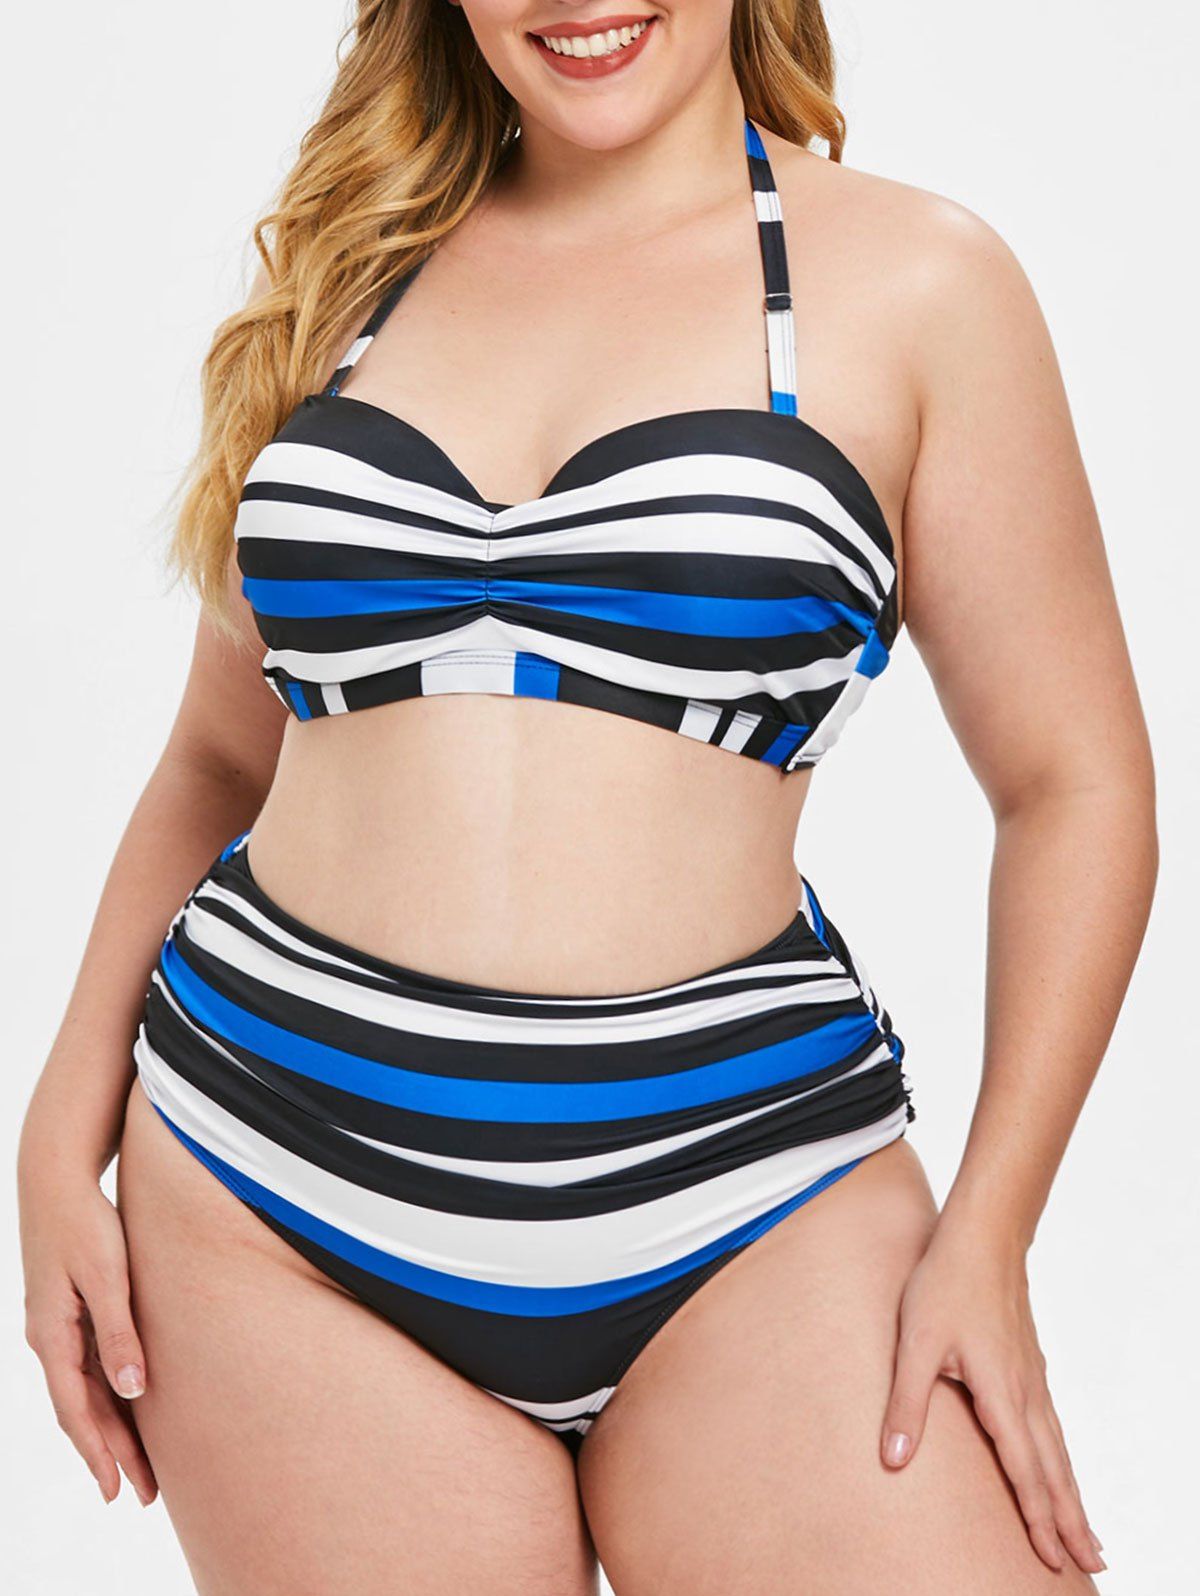 Plus Size Striped Panel Underwire Bikini Set - multicolor 1X